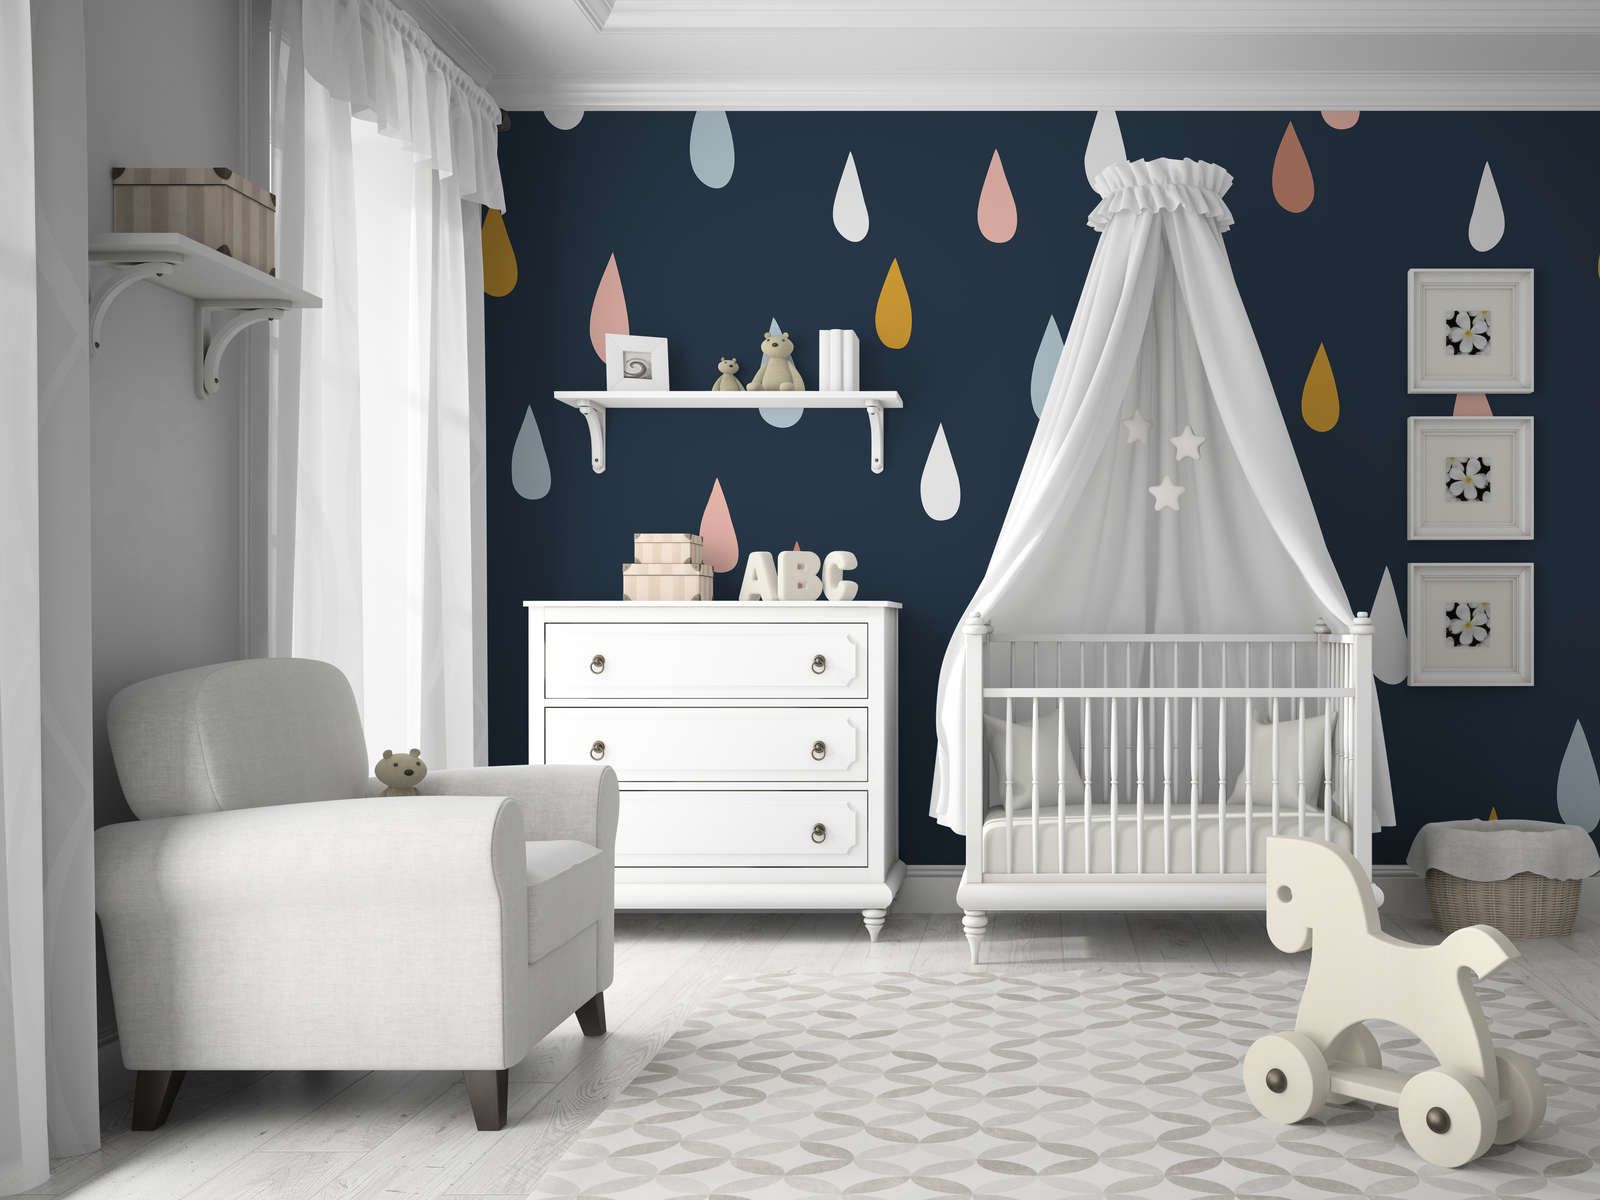             Fototapete fürs Kinderzimmer mit bunten Tropfen – Glattes & mattes Vlies
        